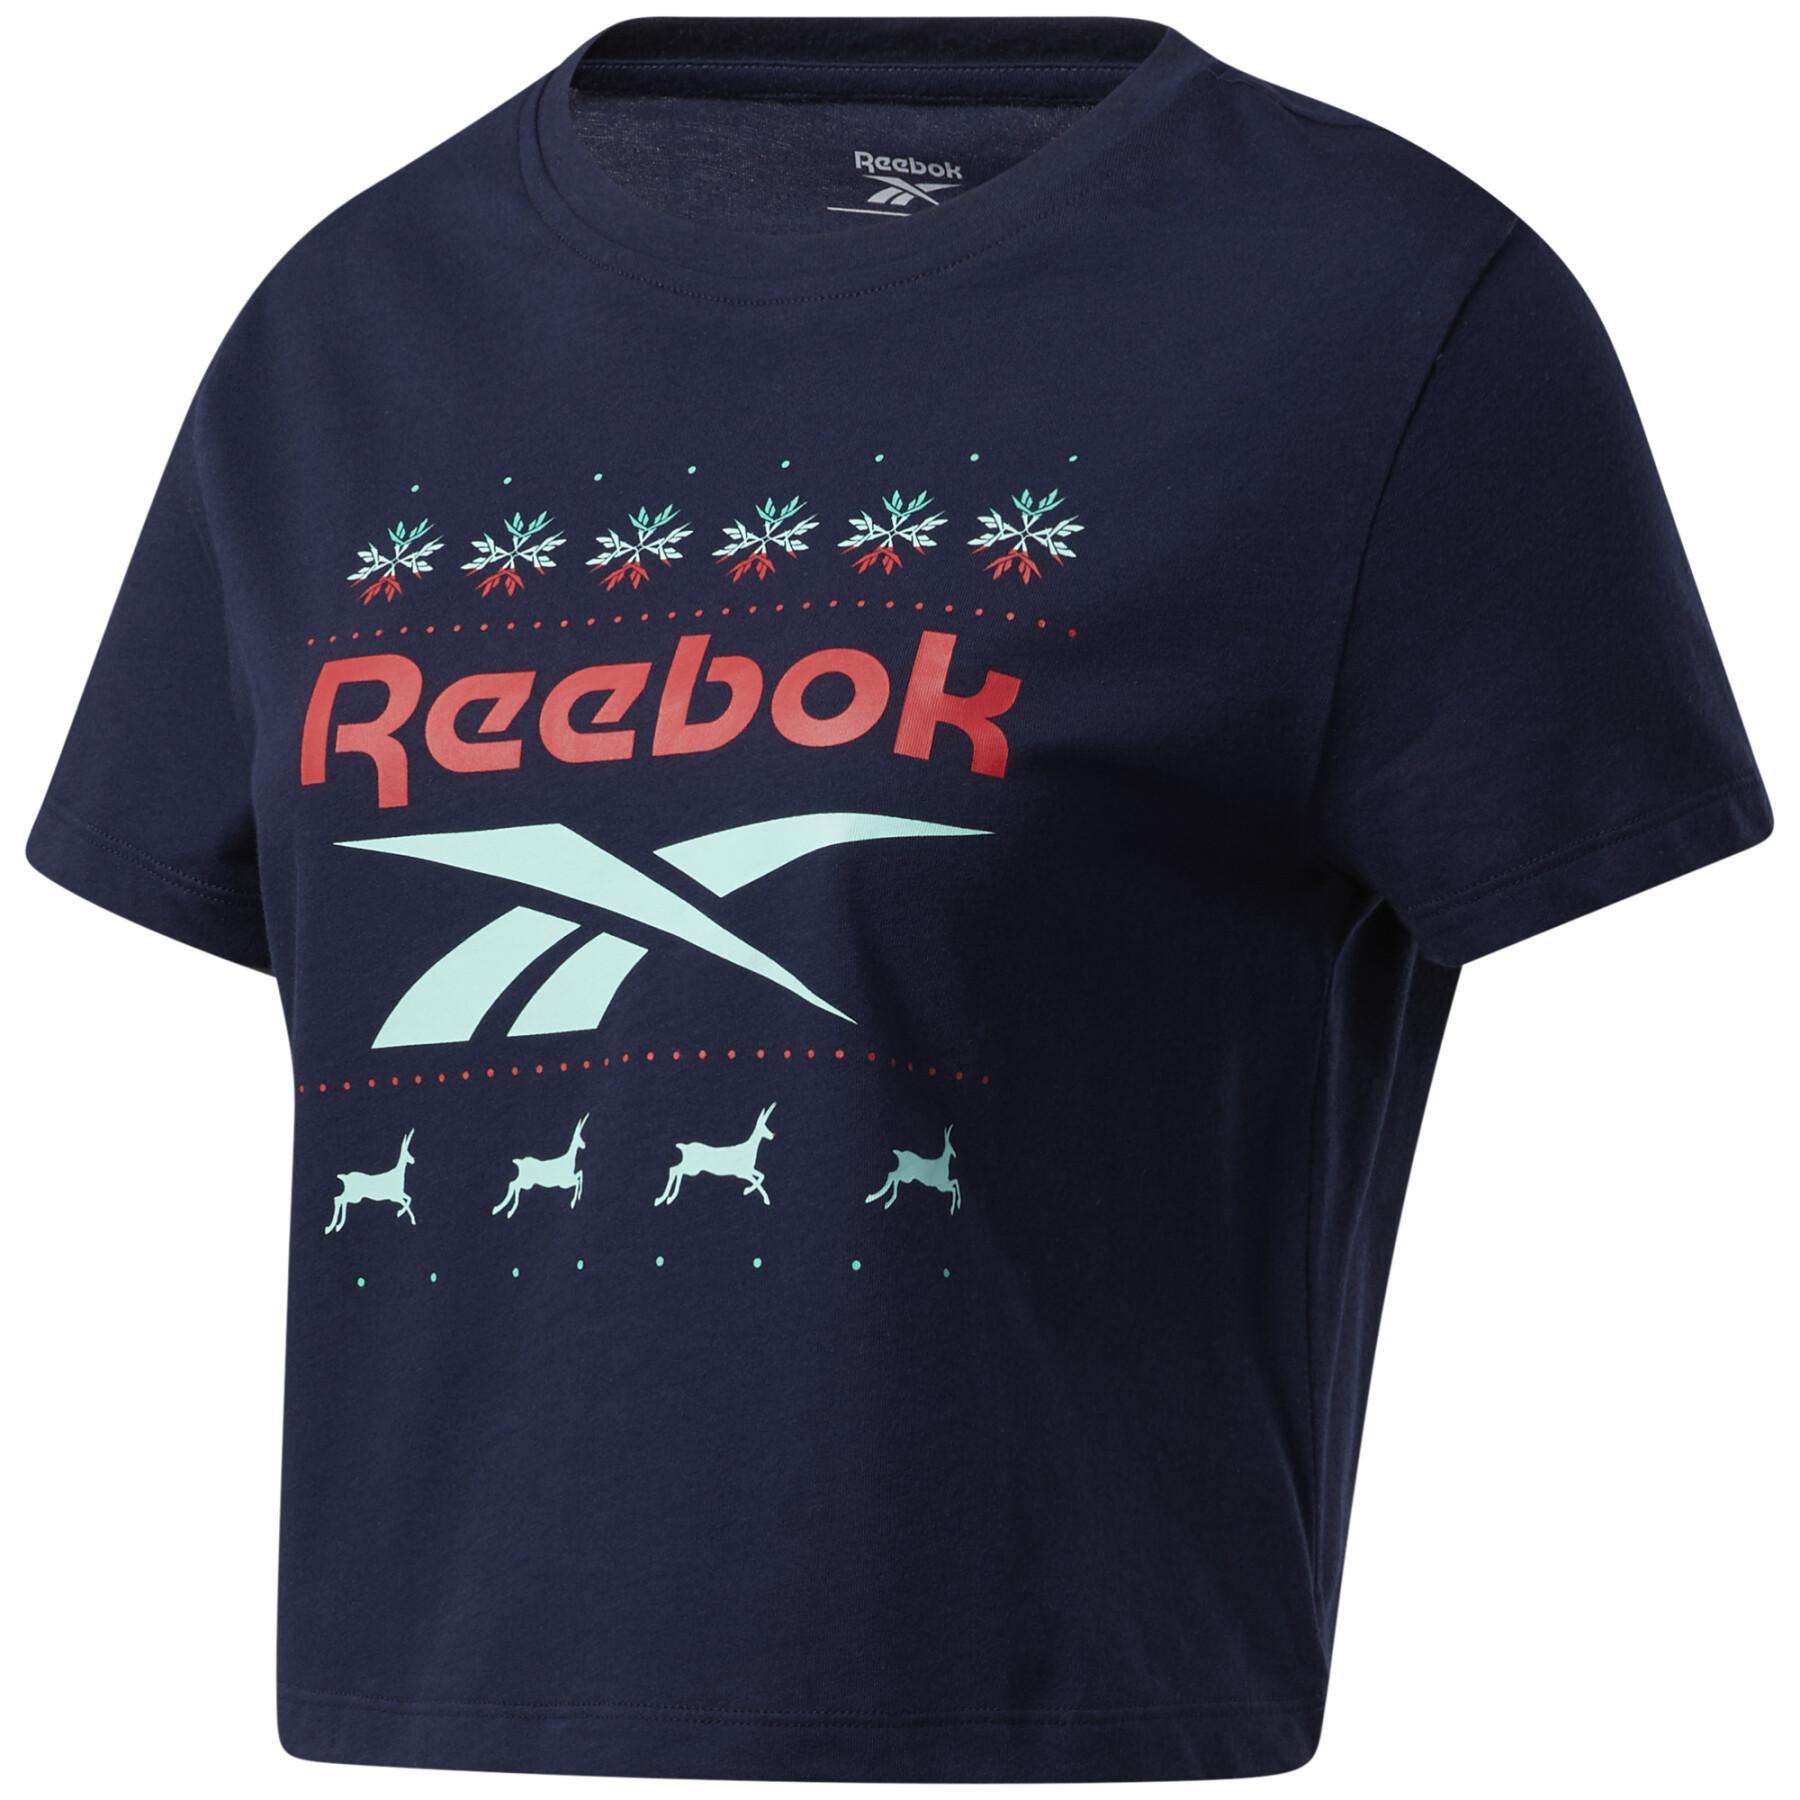 Camiseta feminina Reebok Holiday